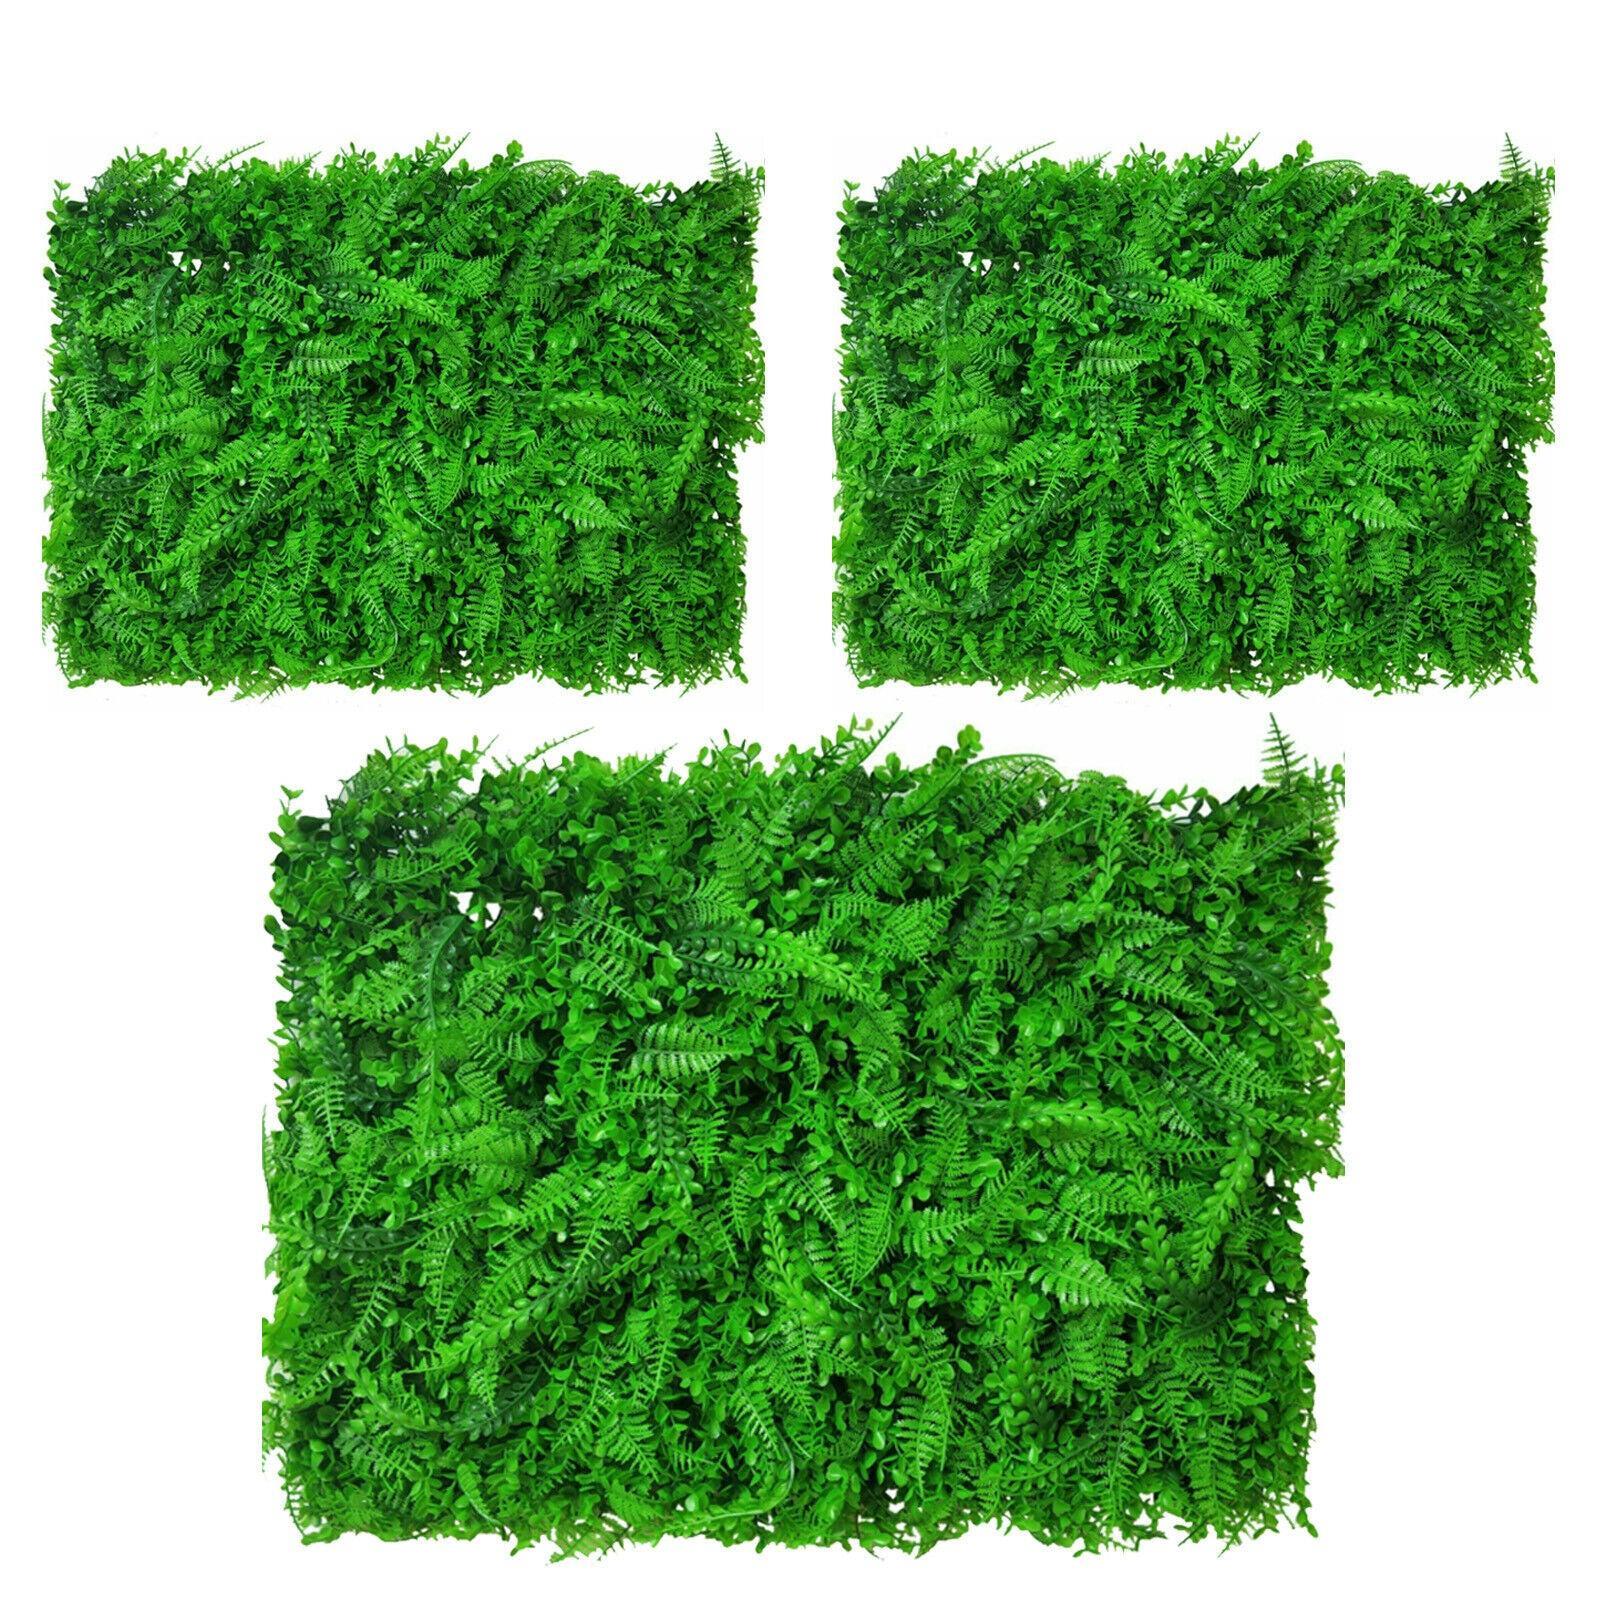 1-6 Artificial Plant Wall Grass Panels Hedge Vertical Garden Ivy Walls Mat Fence